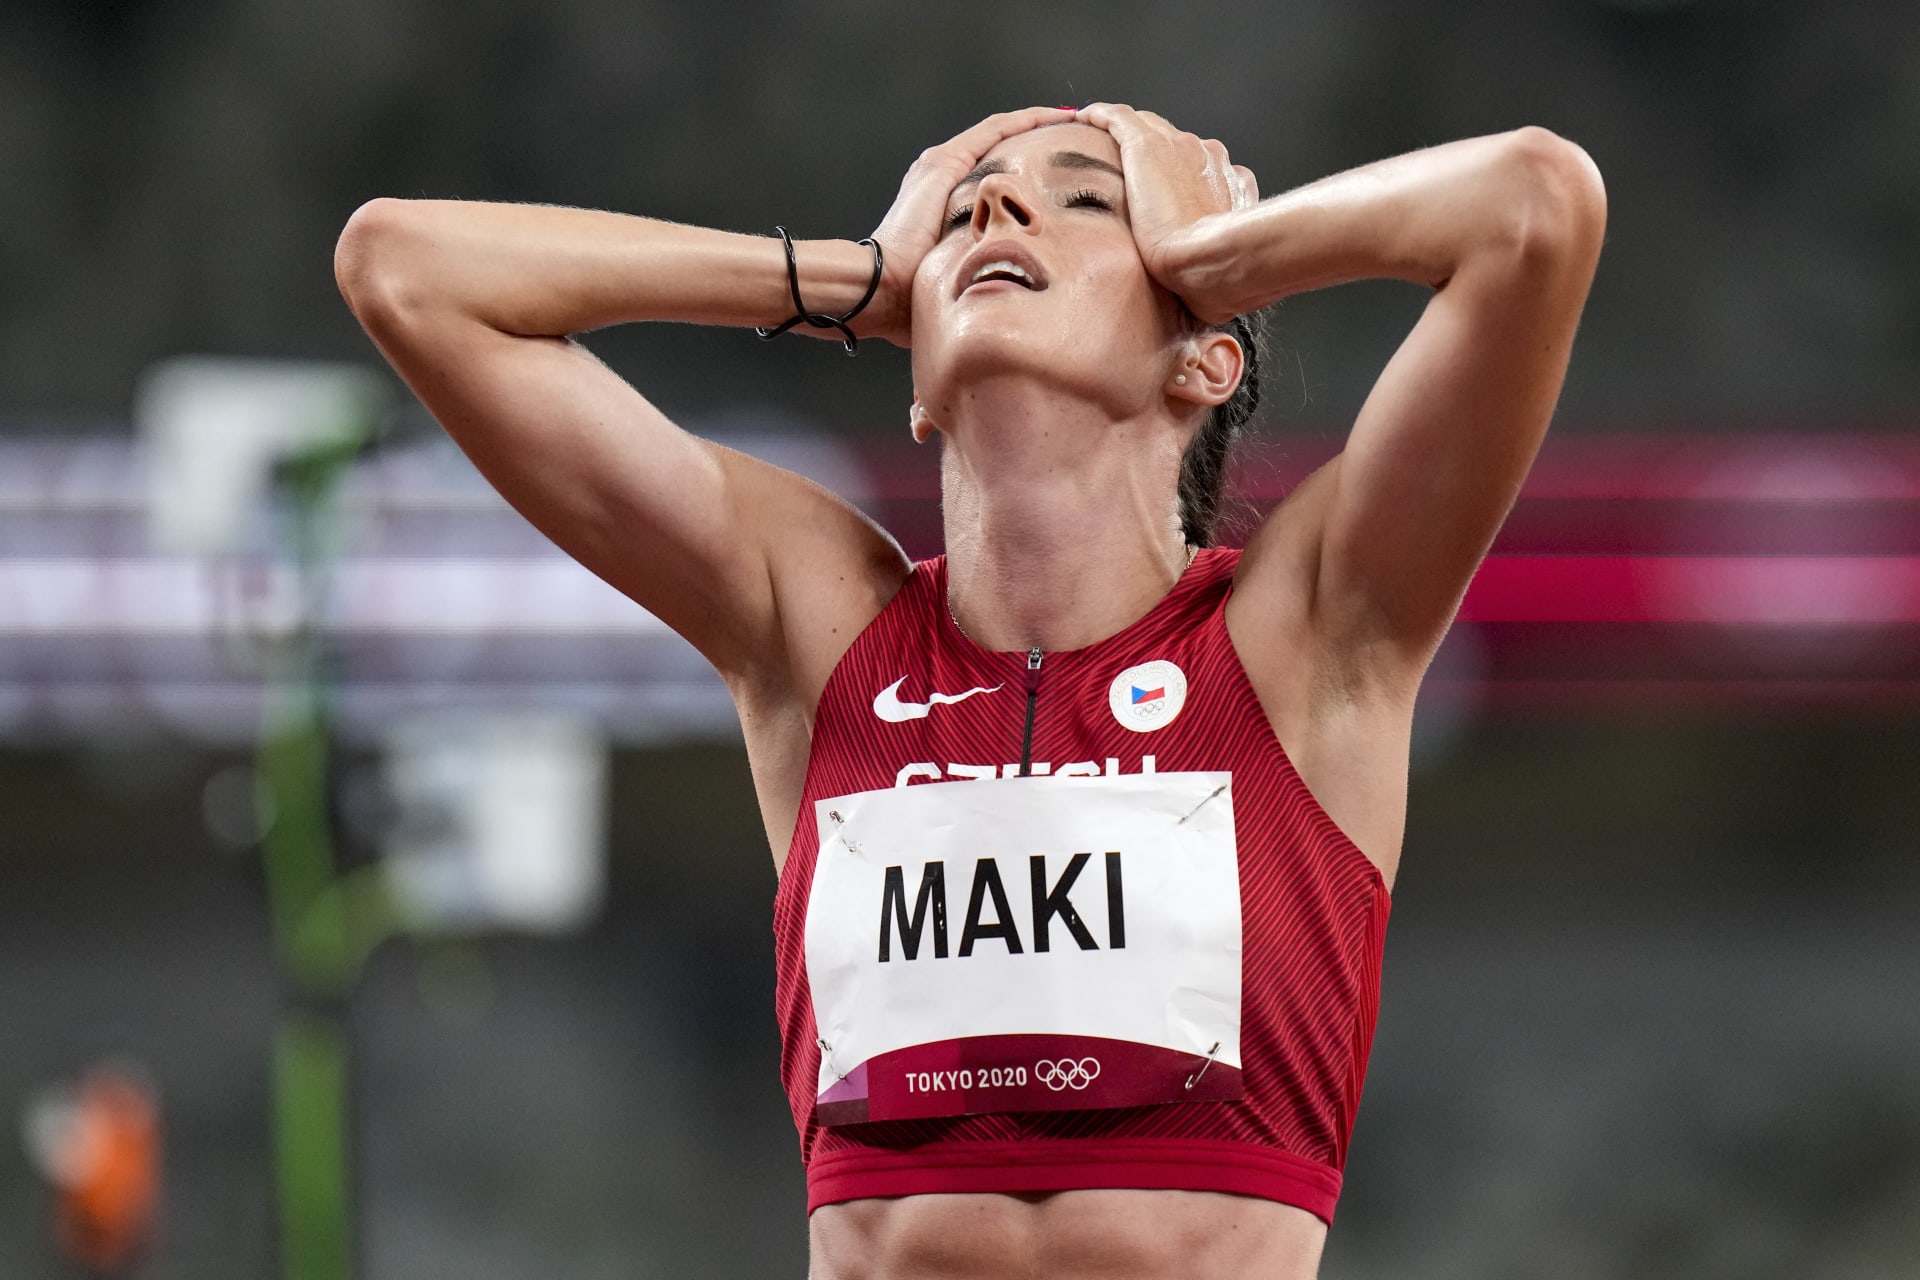 Mílařka Kristiina Mäki ve finále závodu na 1500 m doběhla jako poslední.